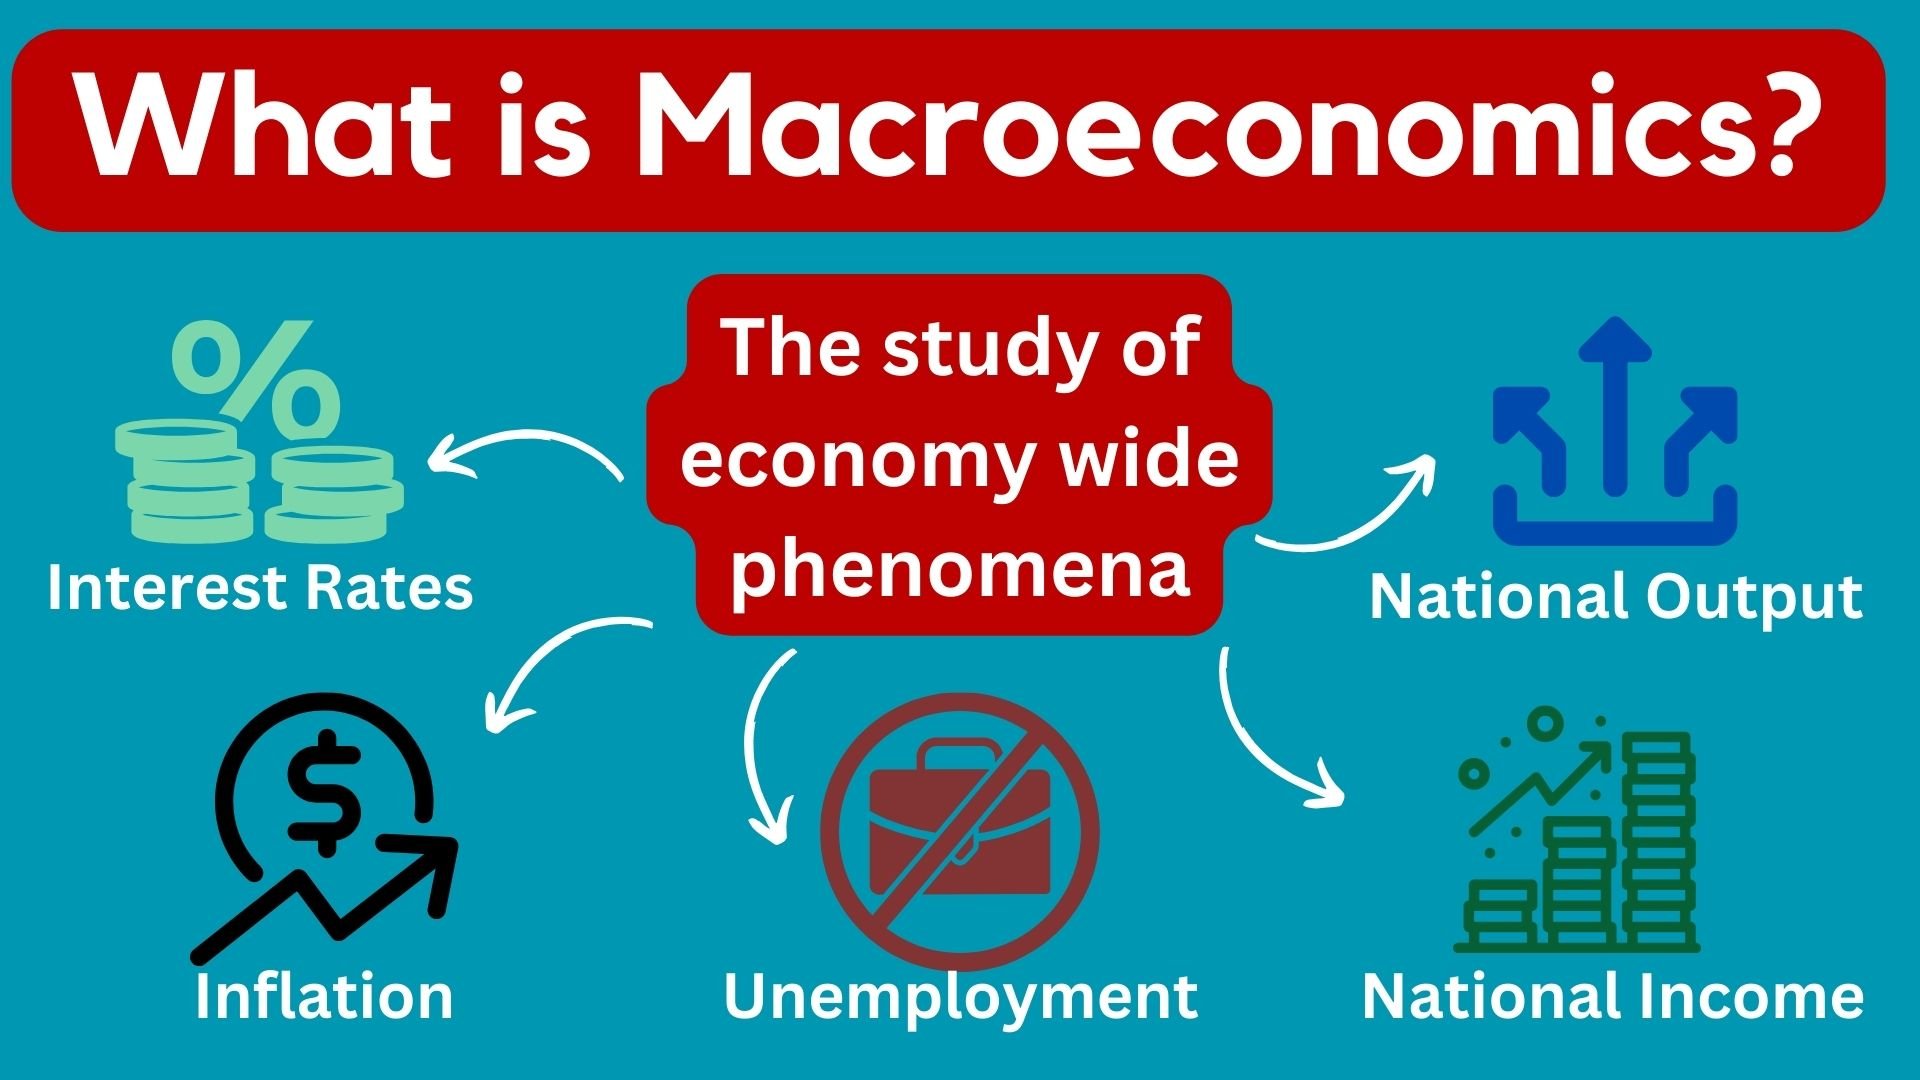 macroeconomics images